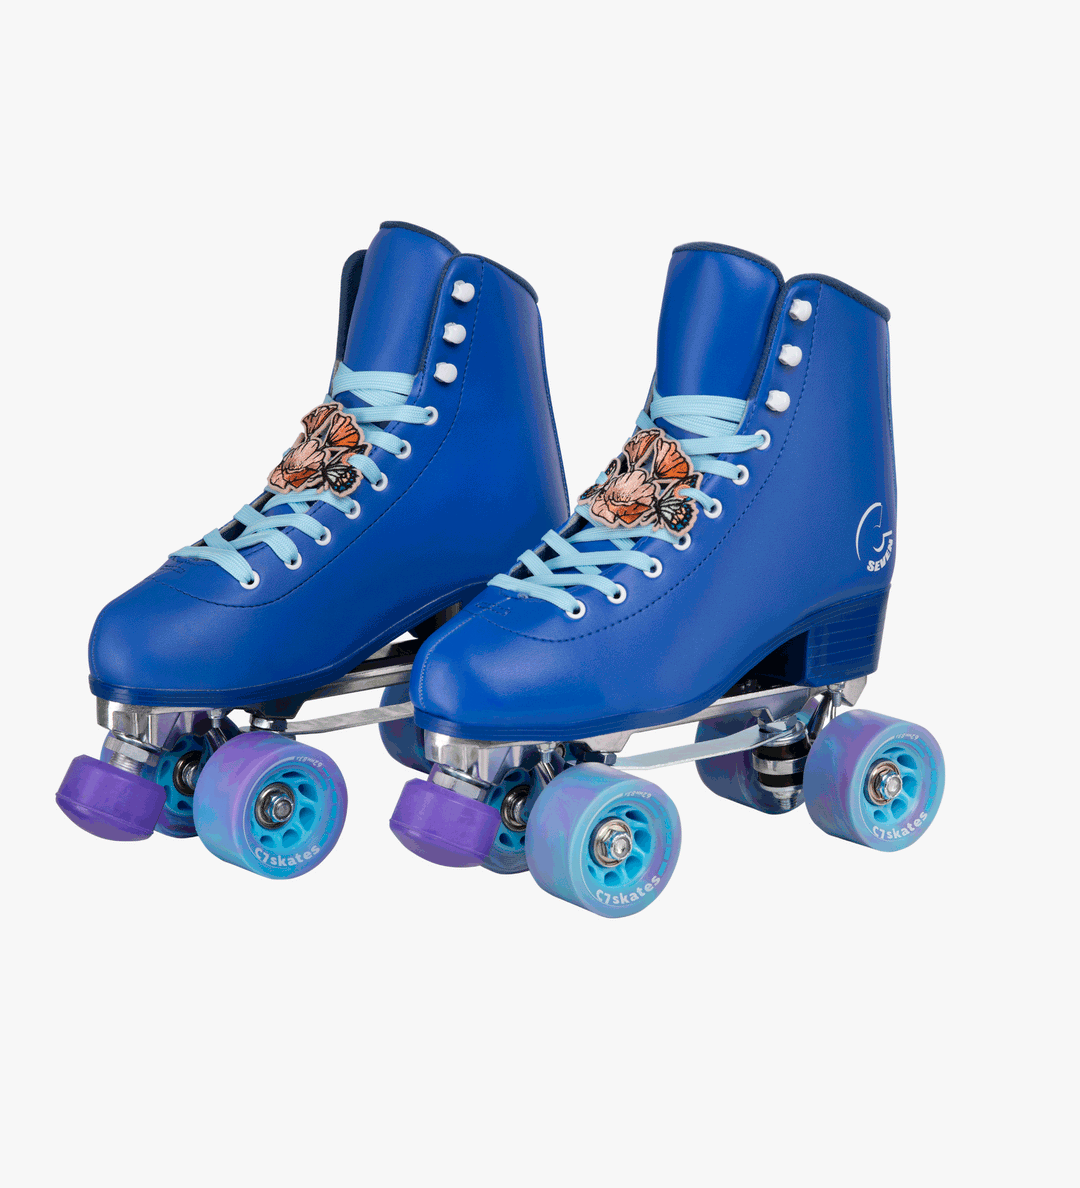 Bluesky DIY Quad Skates